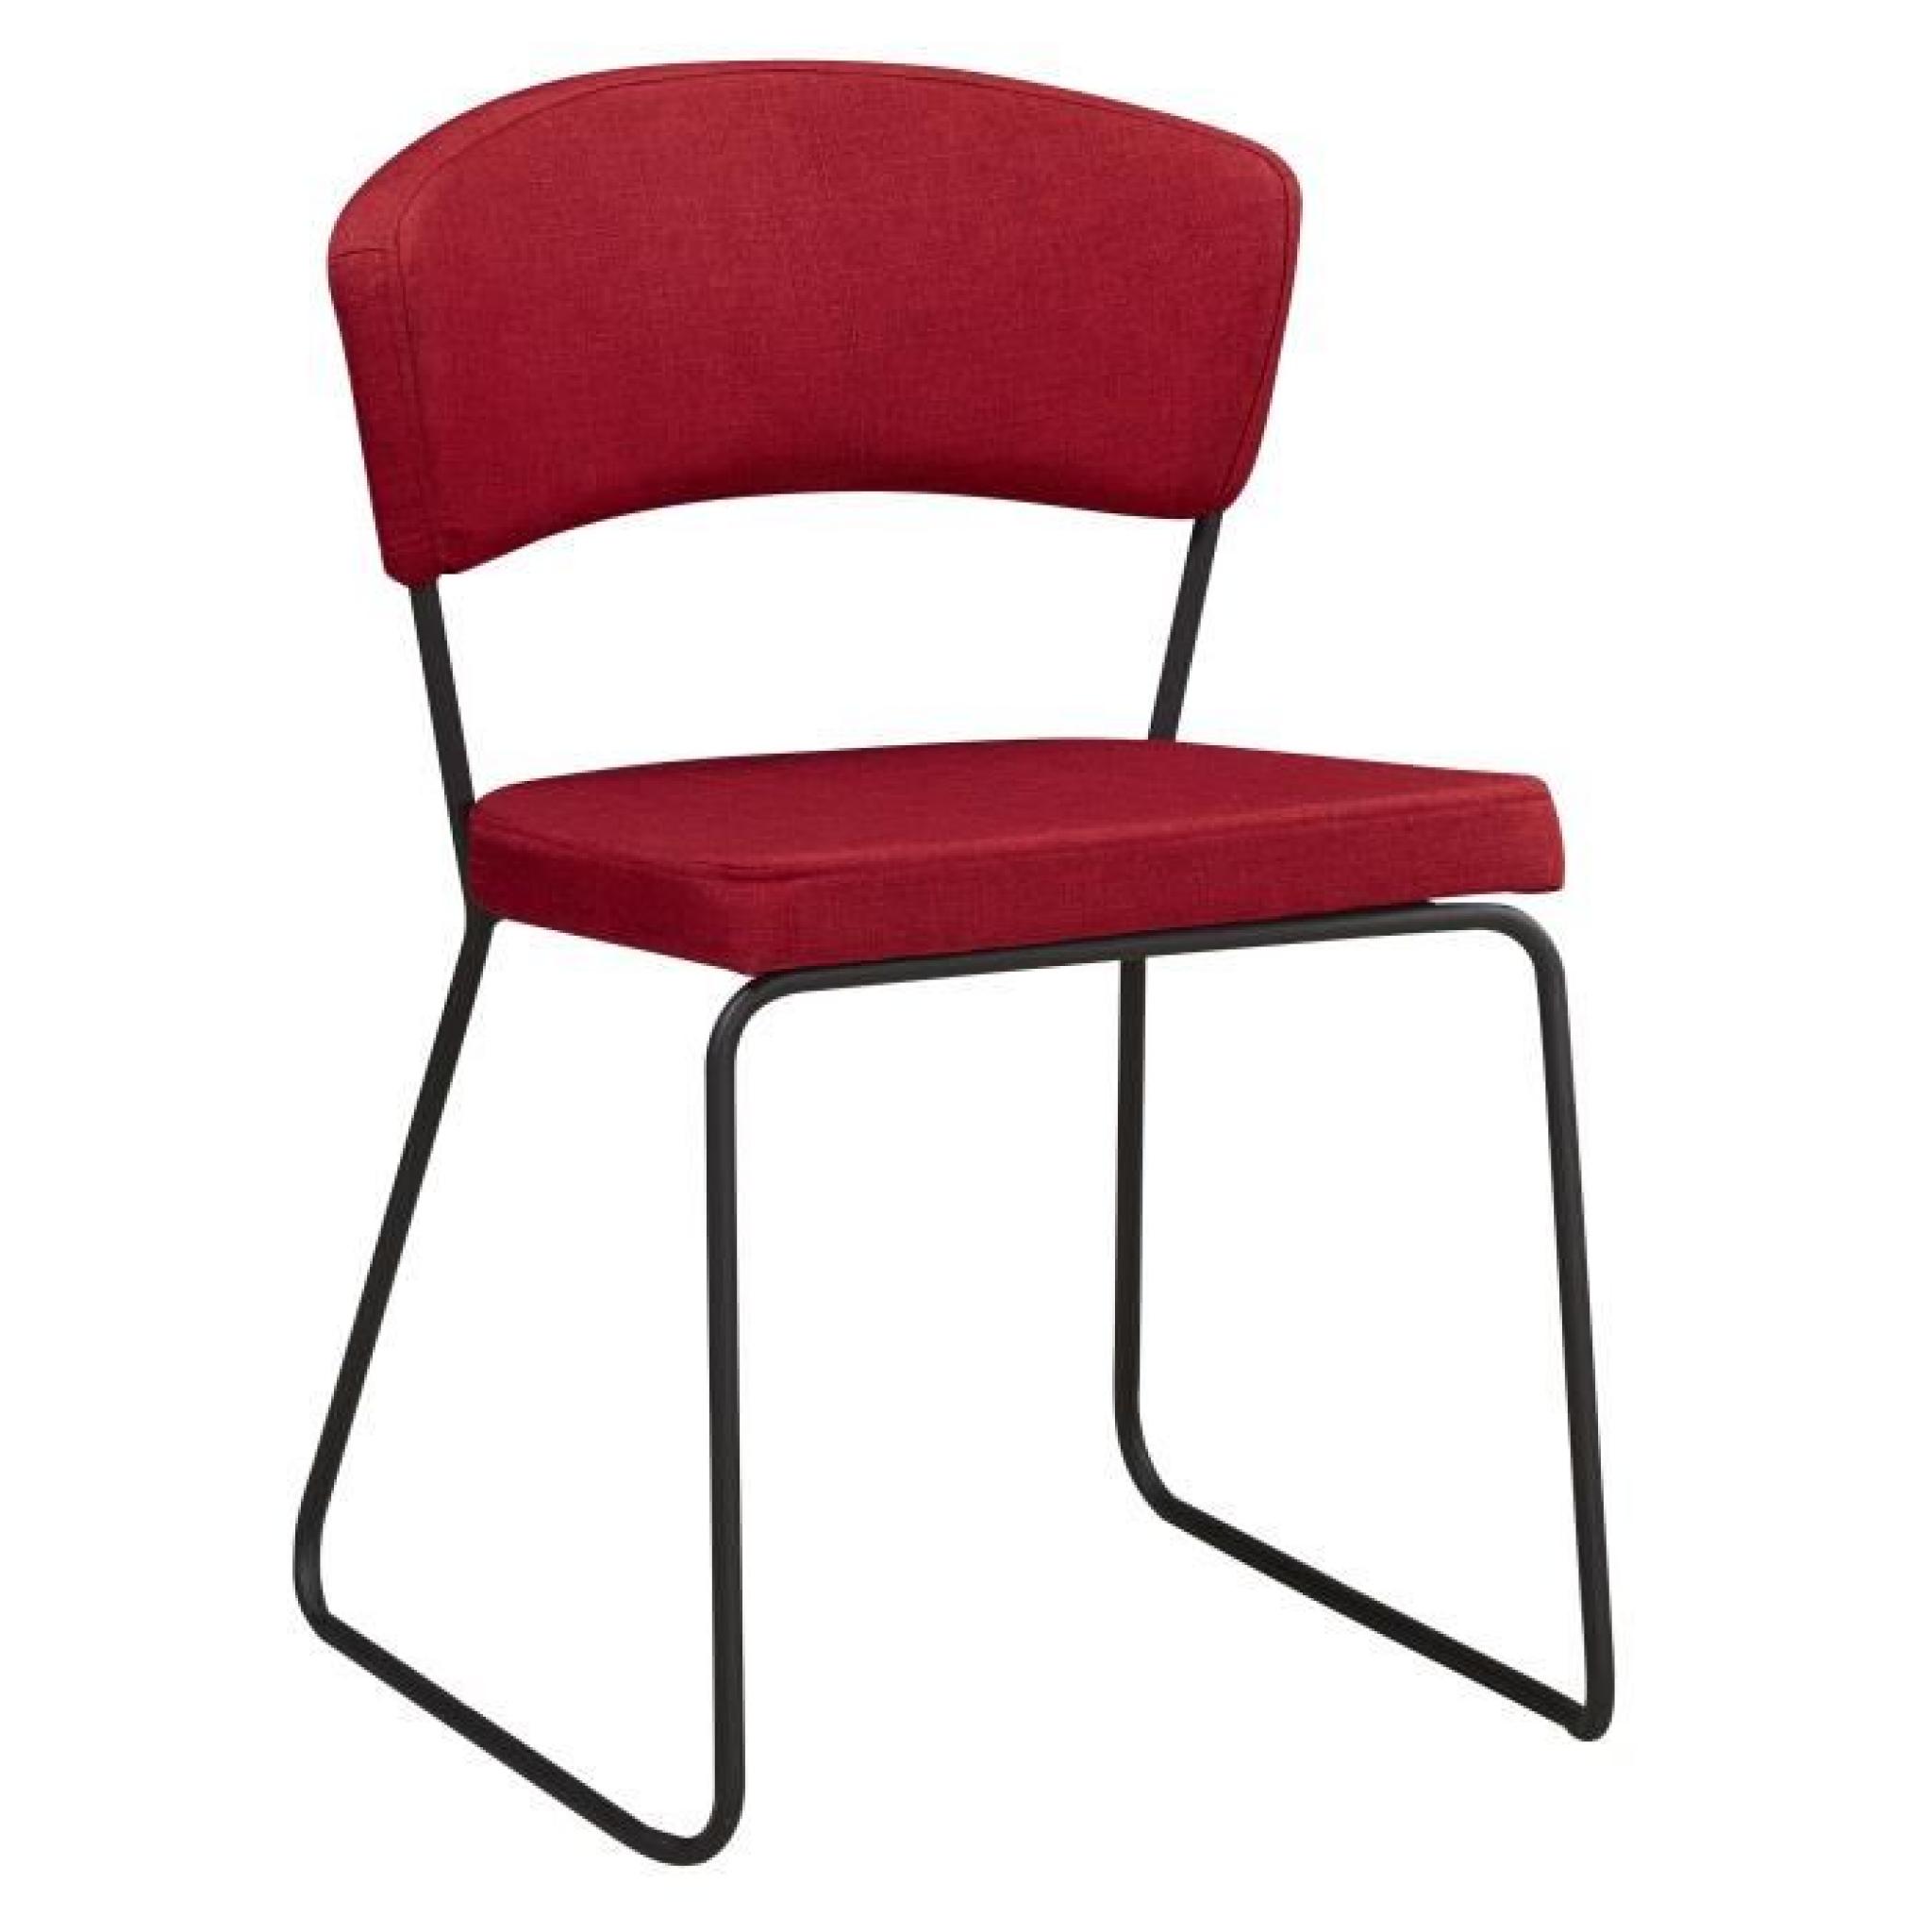 Chaise design minimaliste en tissus coloris rouge cinabre